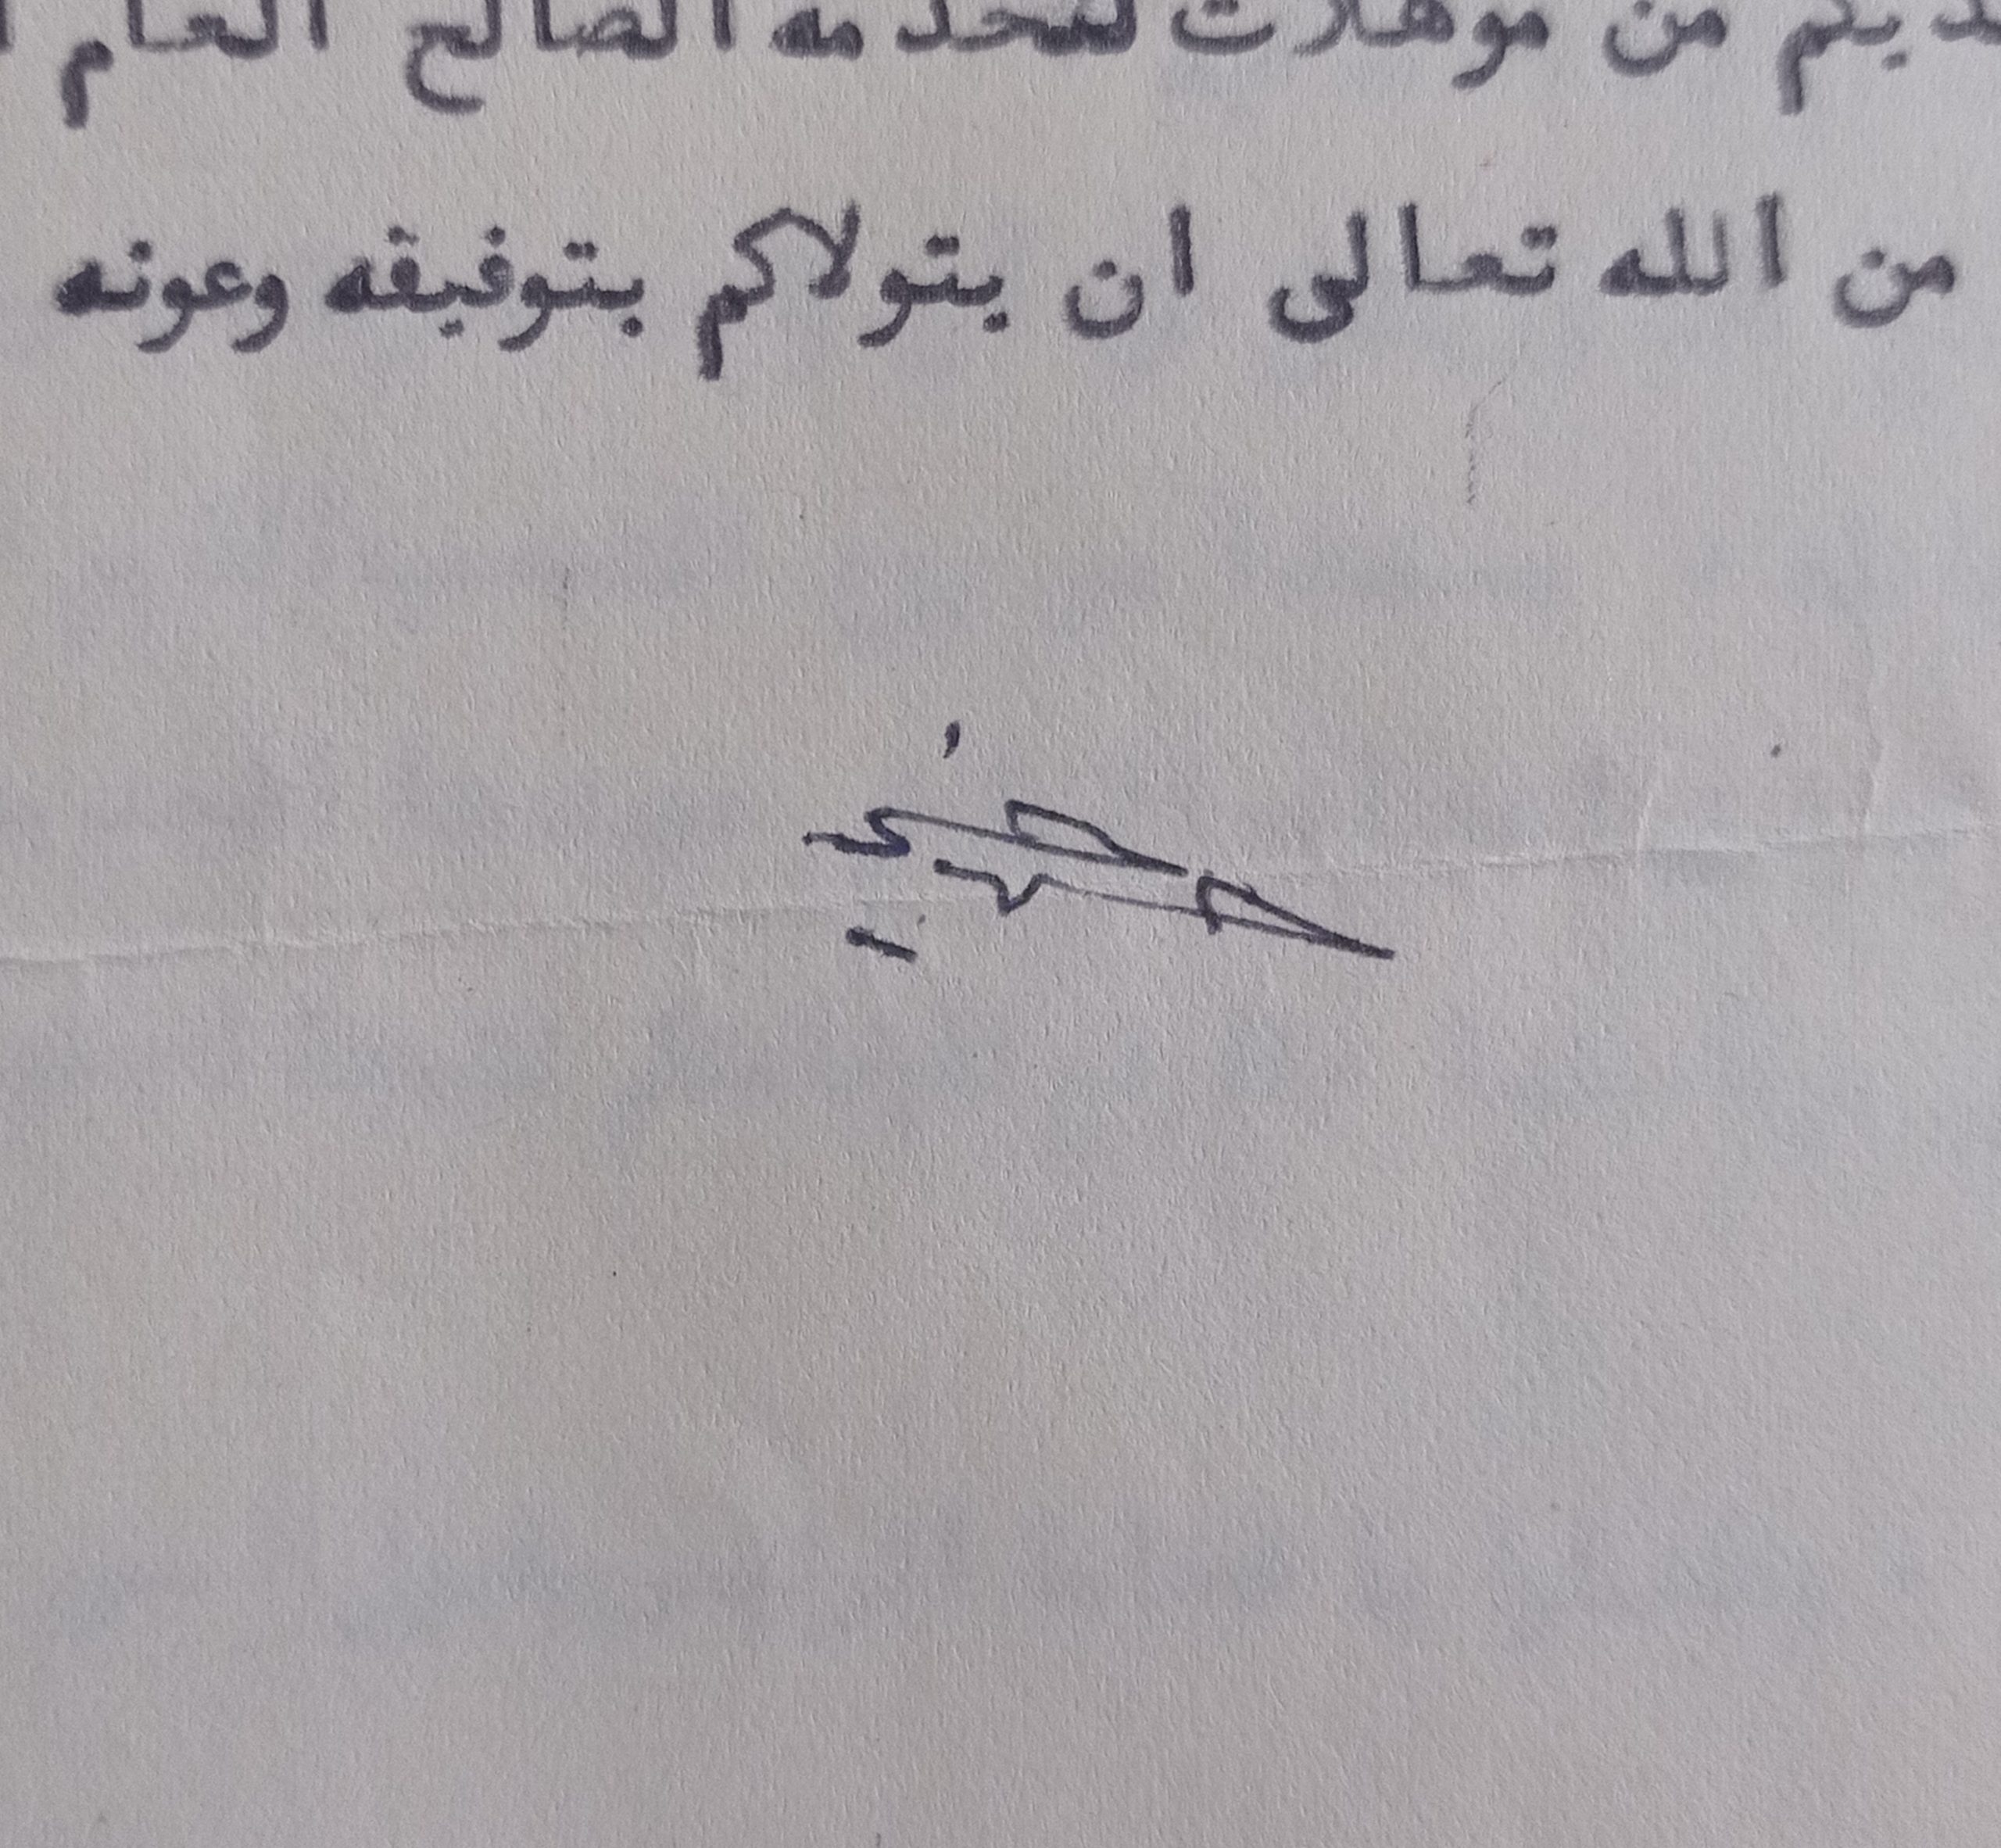 التاريخ السوري المعاصر - توقيع حسني الزعيم رئيس الجمهورية السورية عام 1949